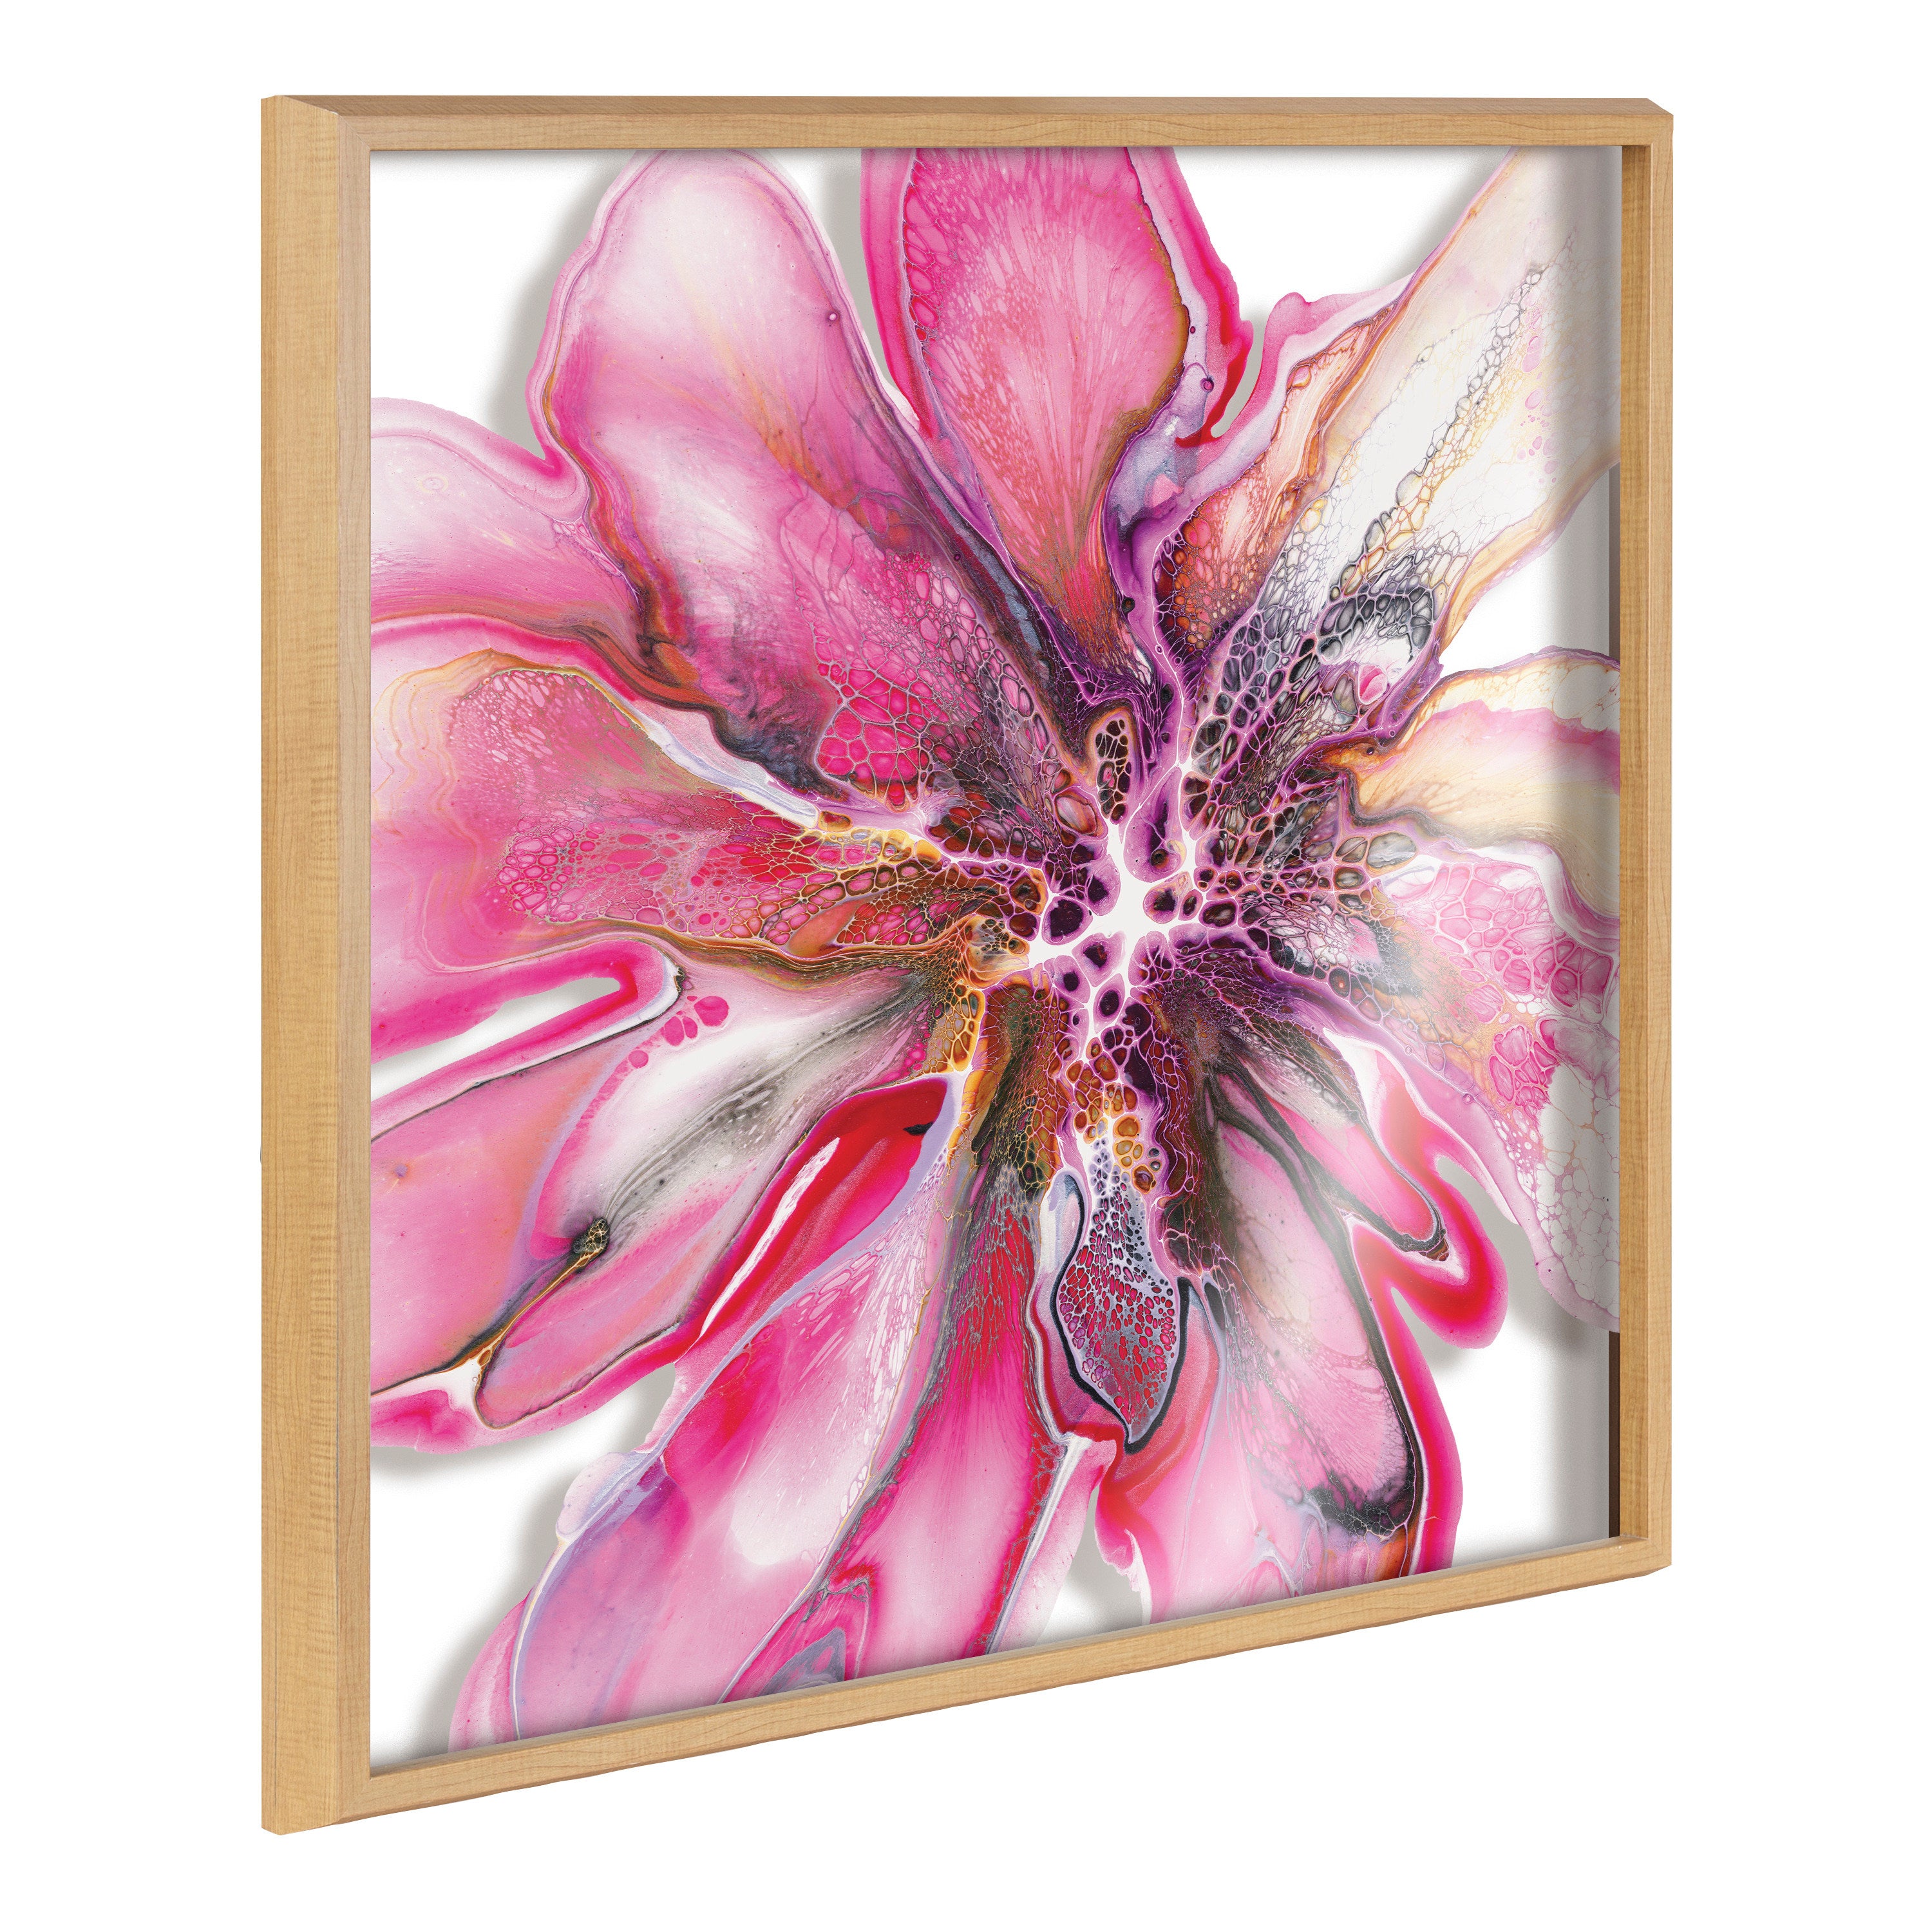 Blake Pink Blooms Framed Printed Art by Xizhou Xie